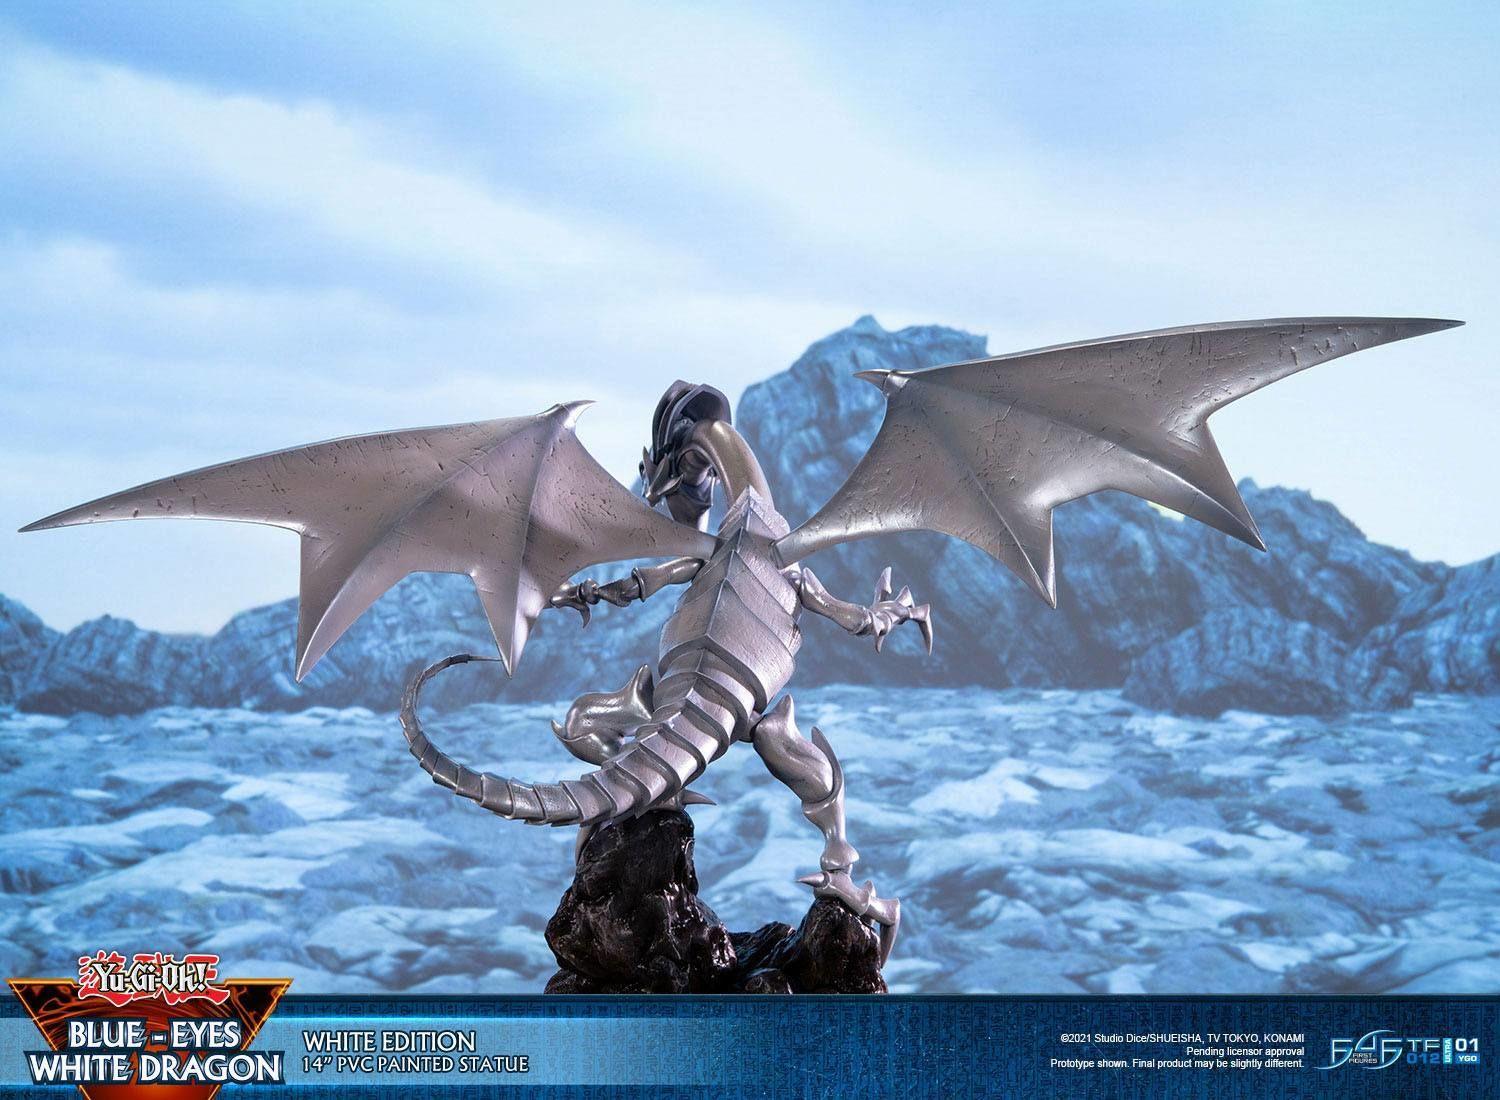 F4FYGOBEWST Yu-Gi-Oh! - Blue Eyes White Dragon (White) - First 4 Figures - Titan Pop Culture